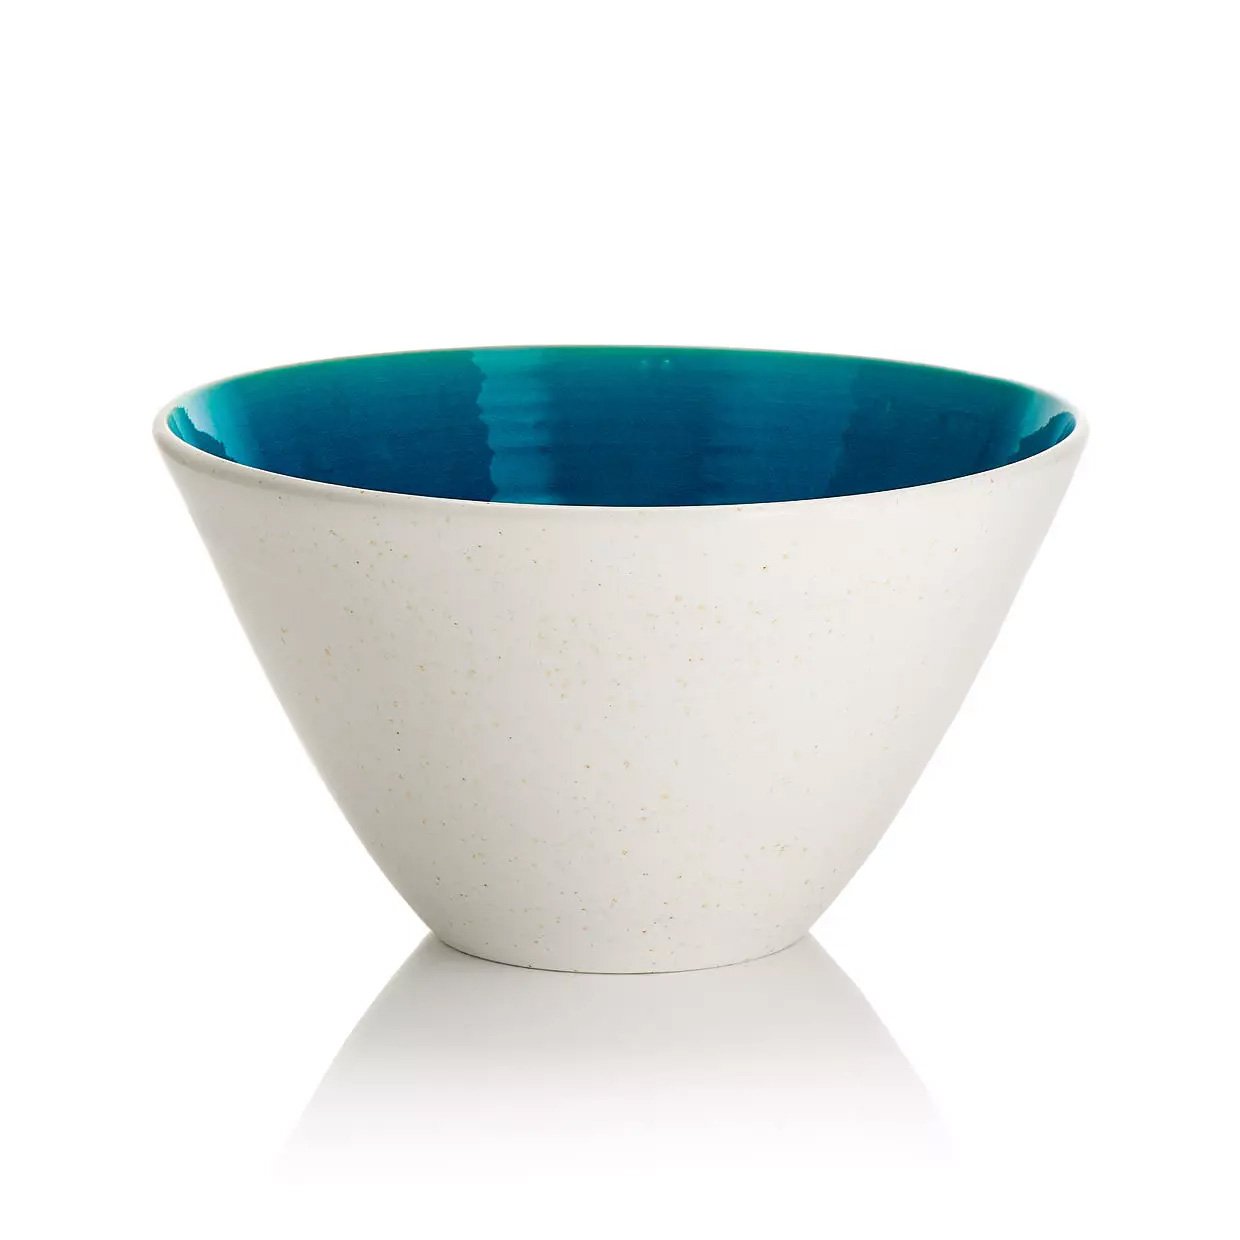 White bowl product image